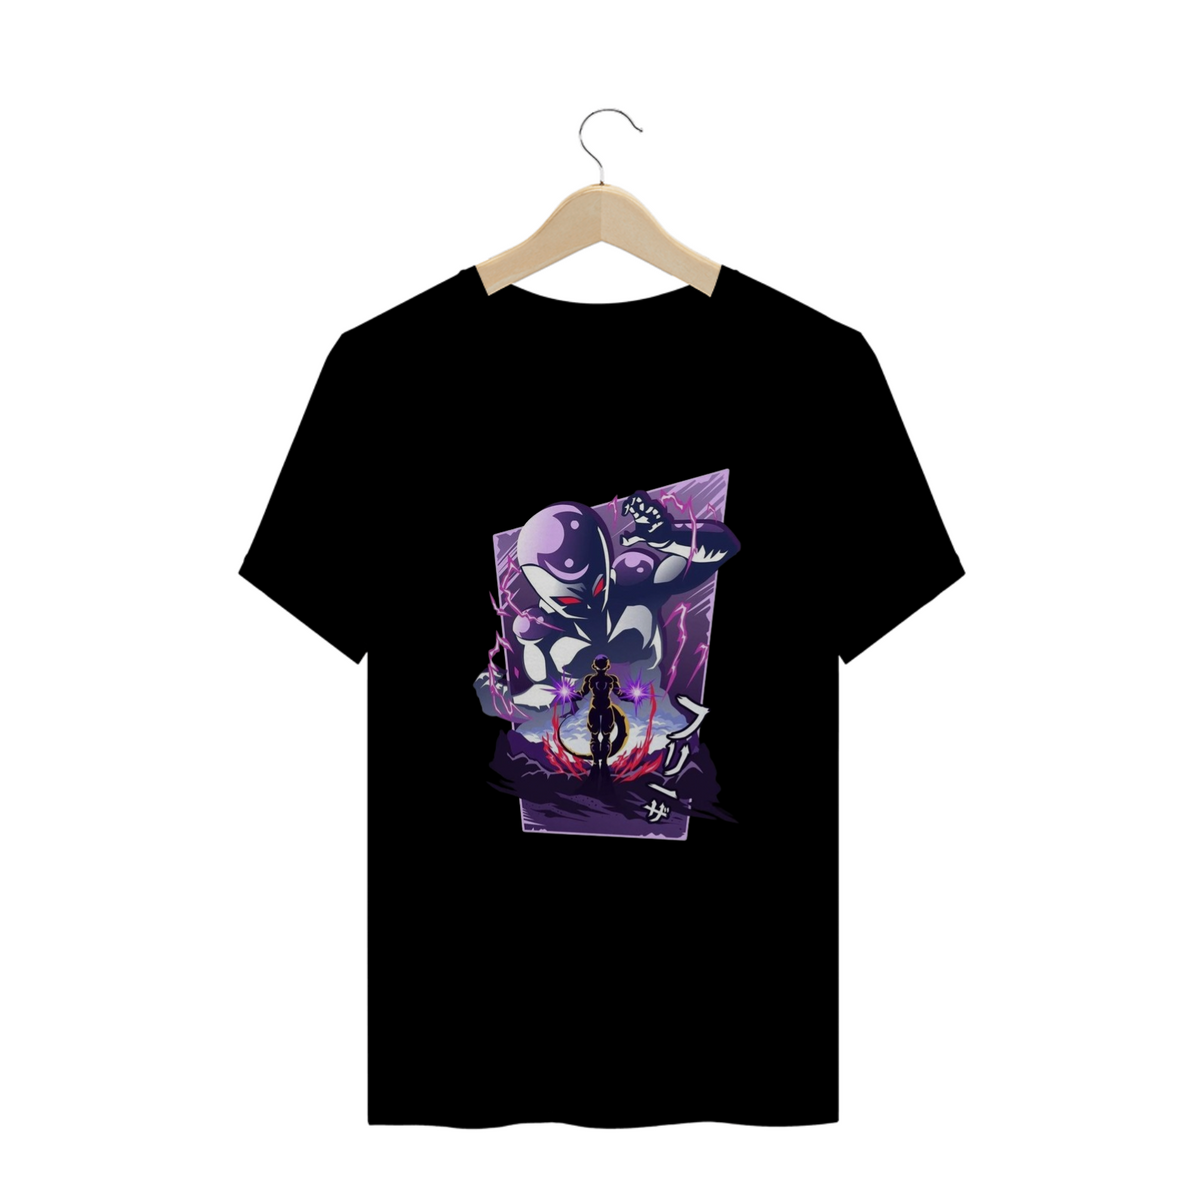 Nome do produto: Camisa T-shirt Plus Size - Freeza ( Dragon Ball Z)